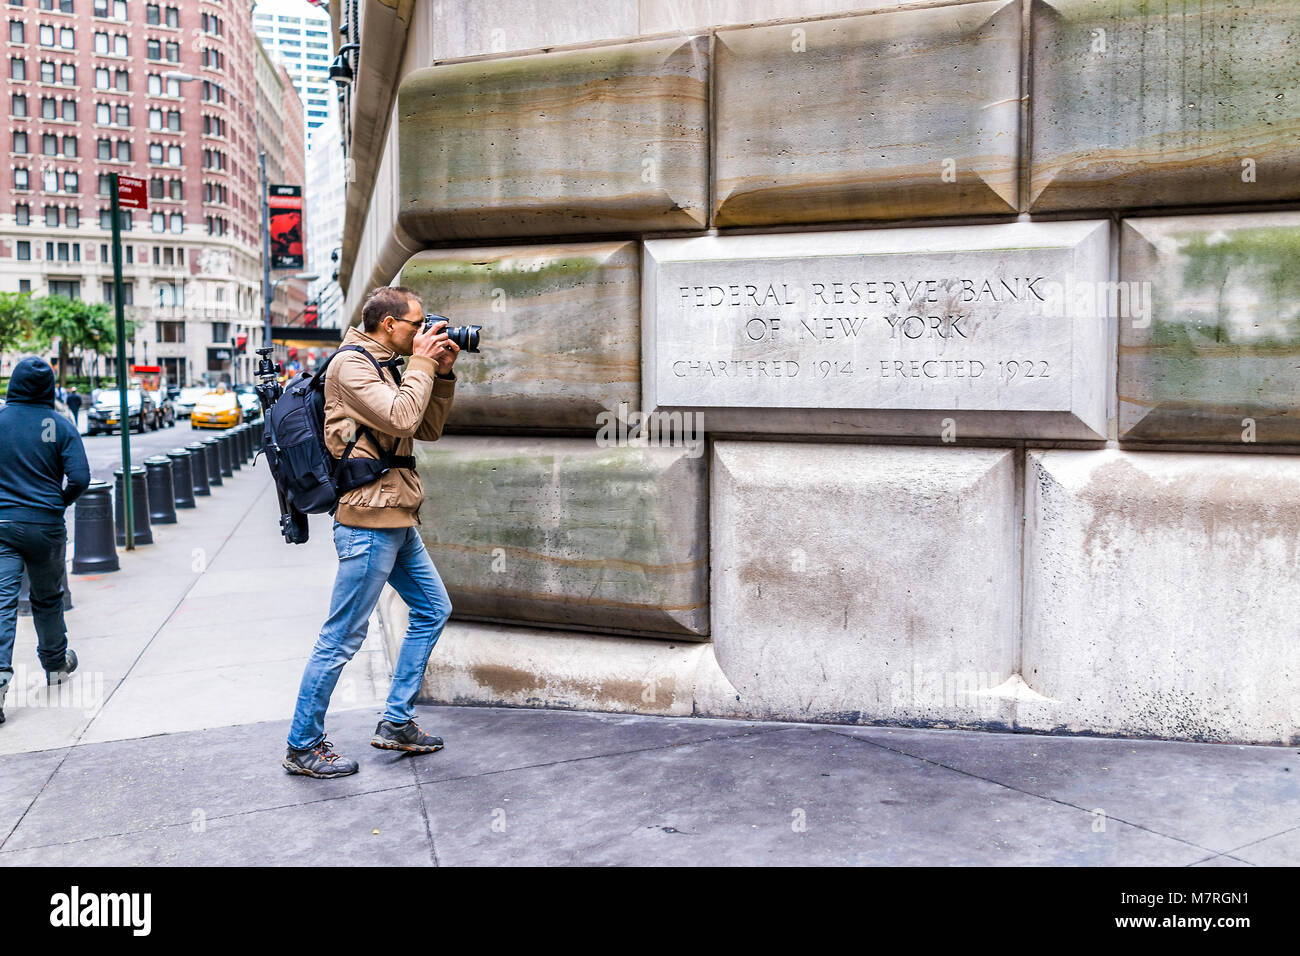 New York City, USA - 30. Oktober 2017: Federal Reserve Bank unterzeichnen mit jungen Mann Fotograf Aufnahmen im unteren Downtown Financial District Manh Stockfoto